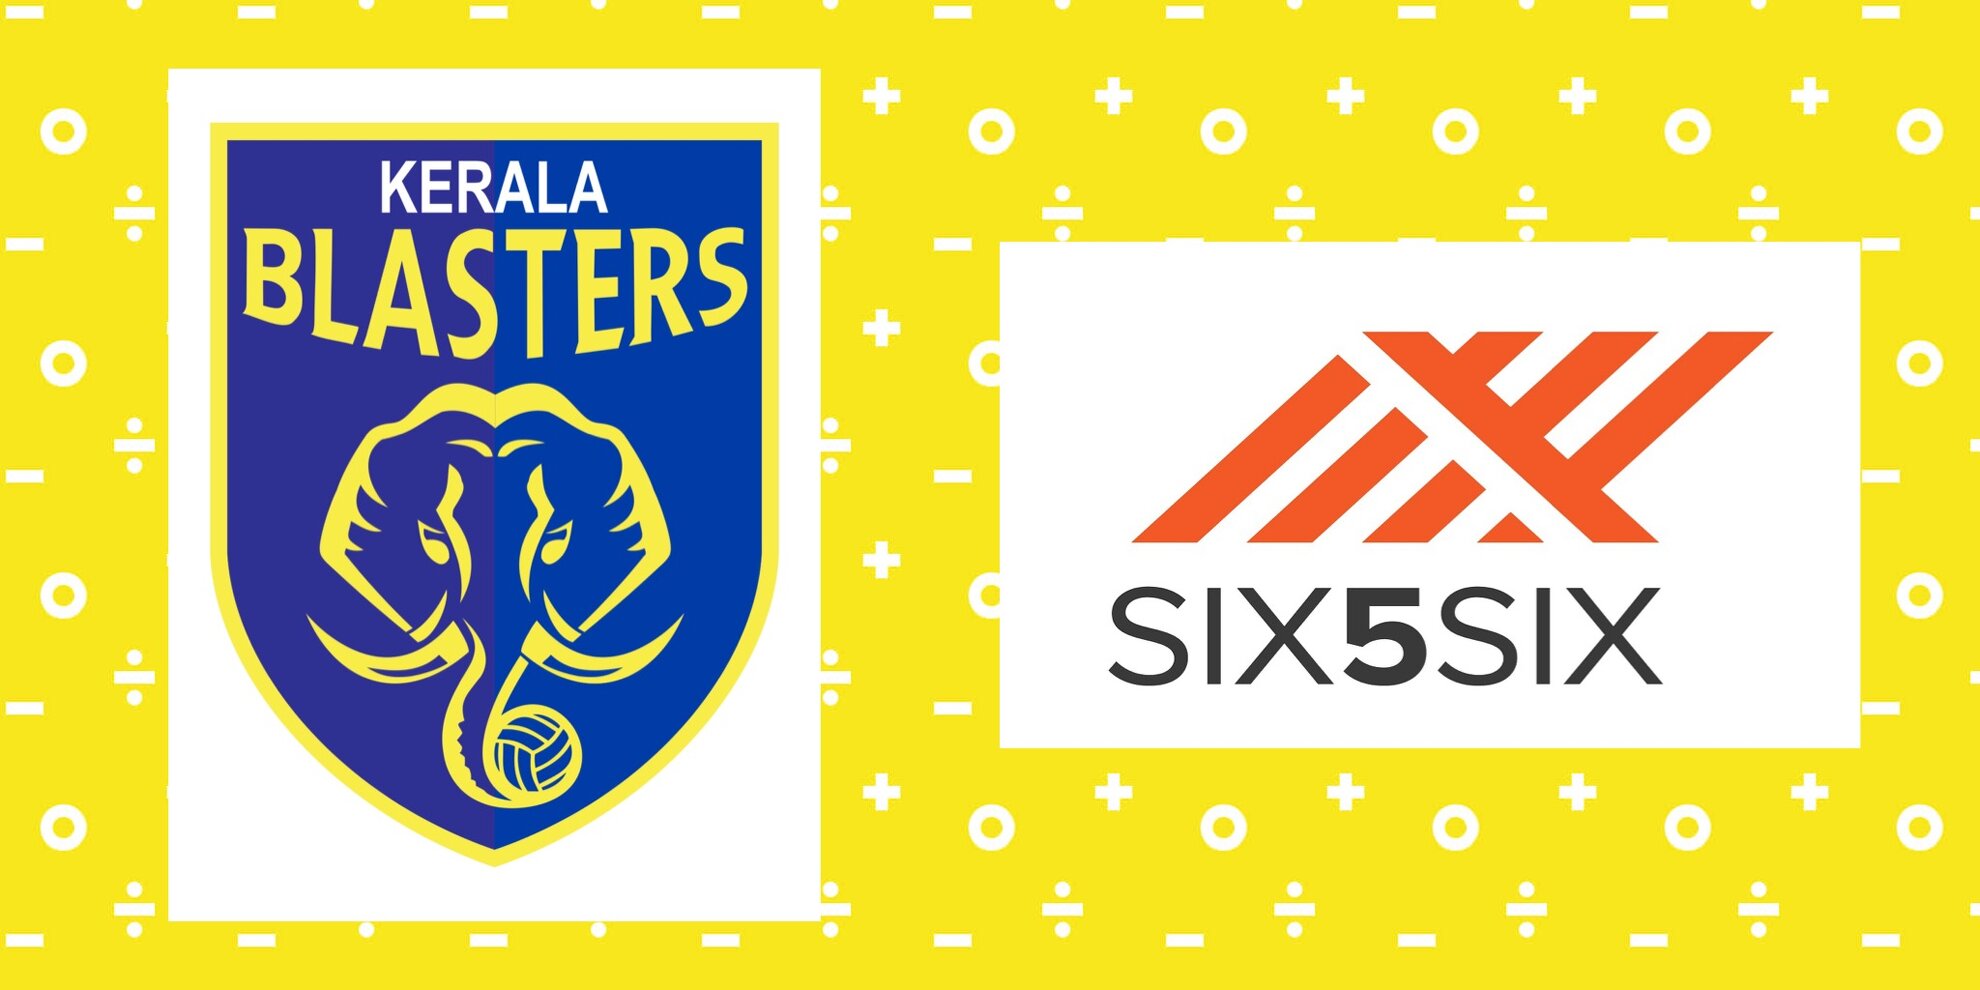 SIX5SIX Kerala Blasters